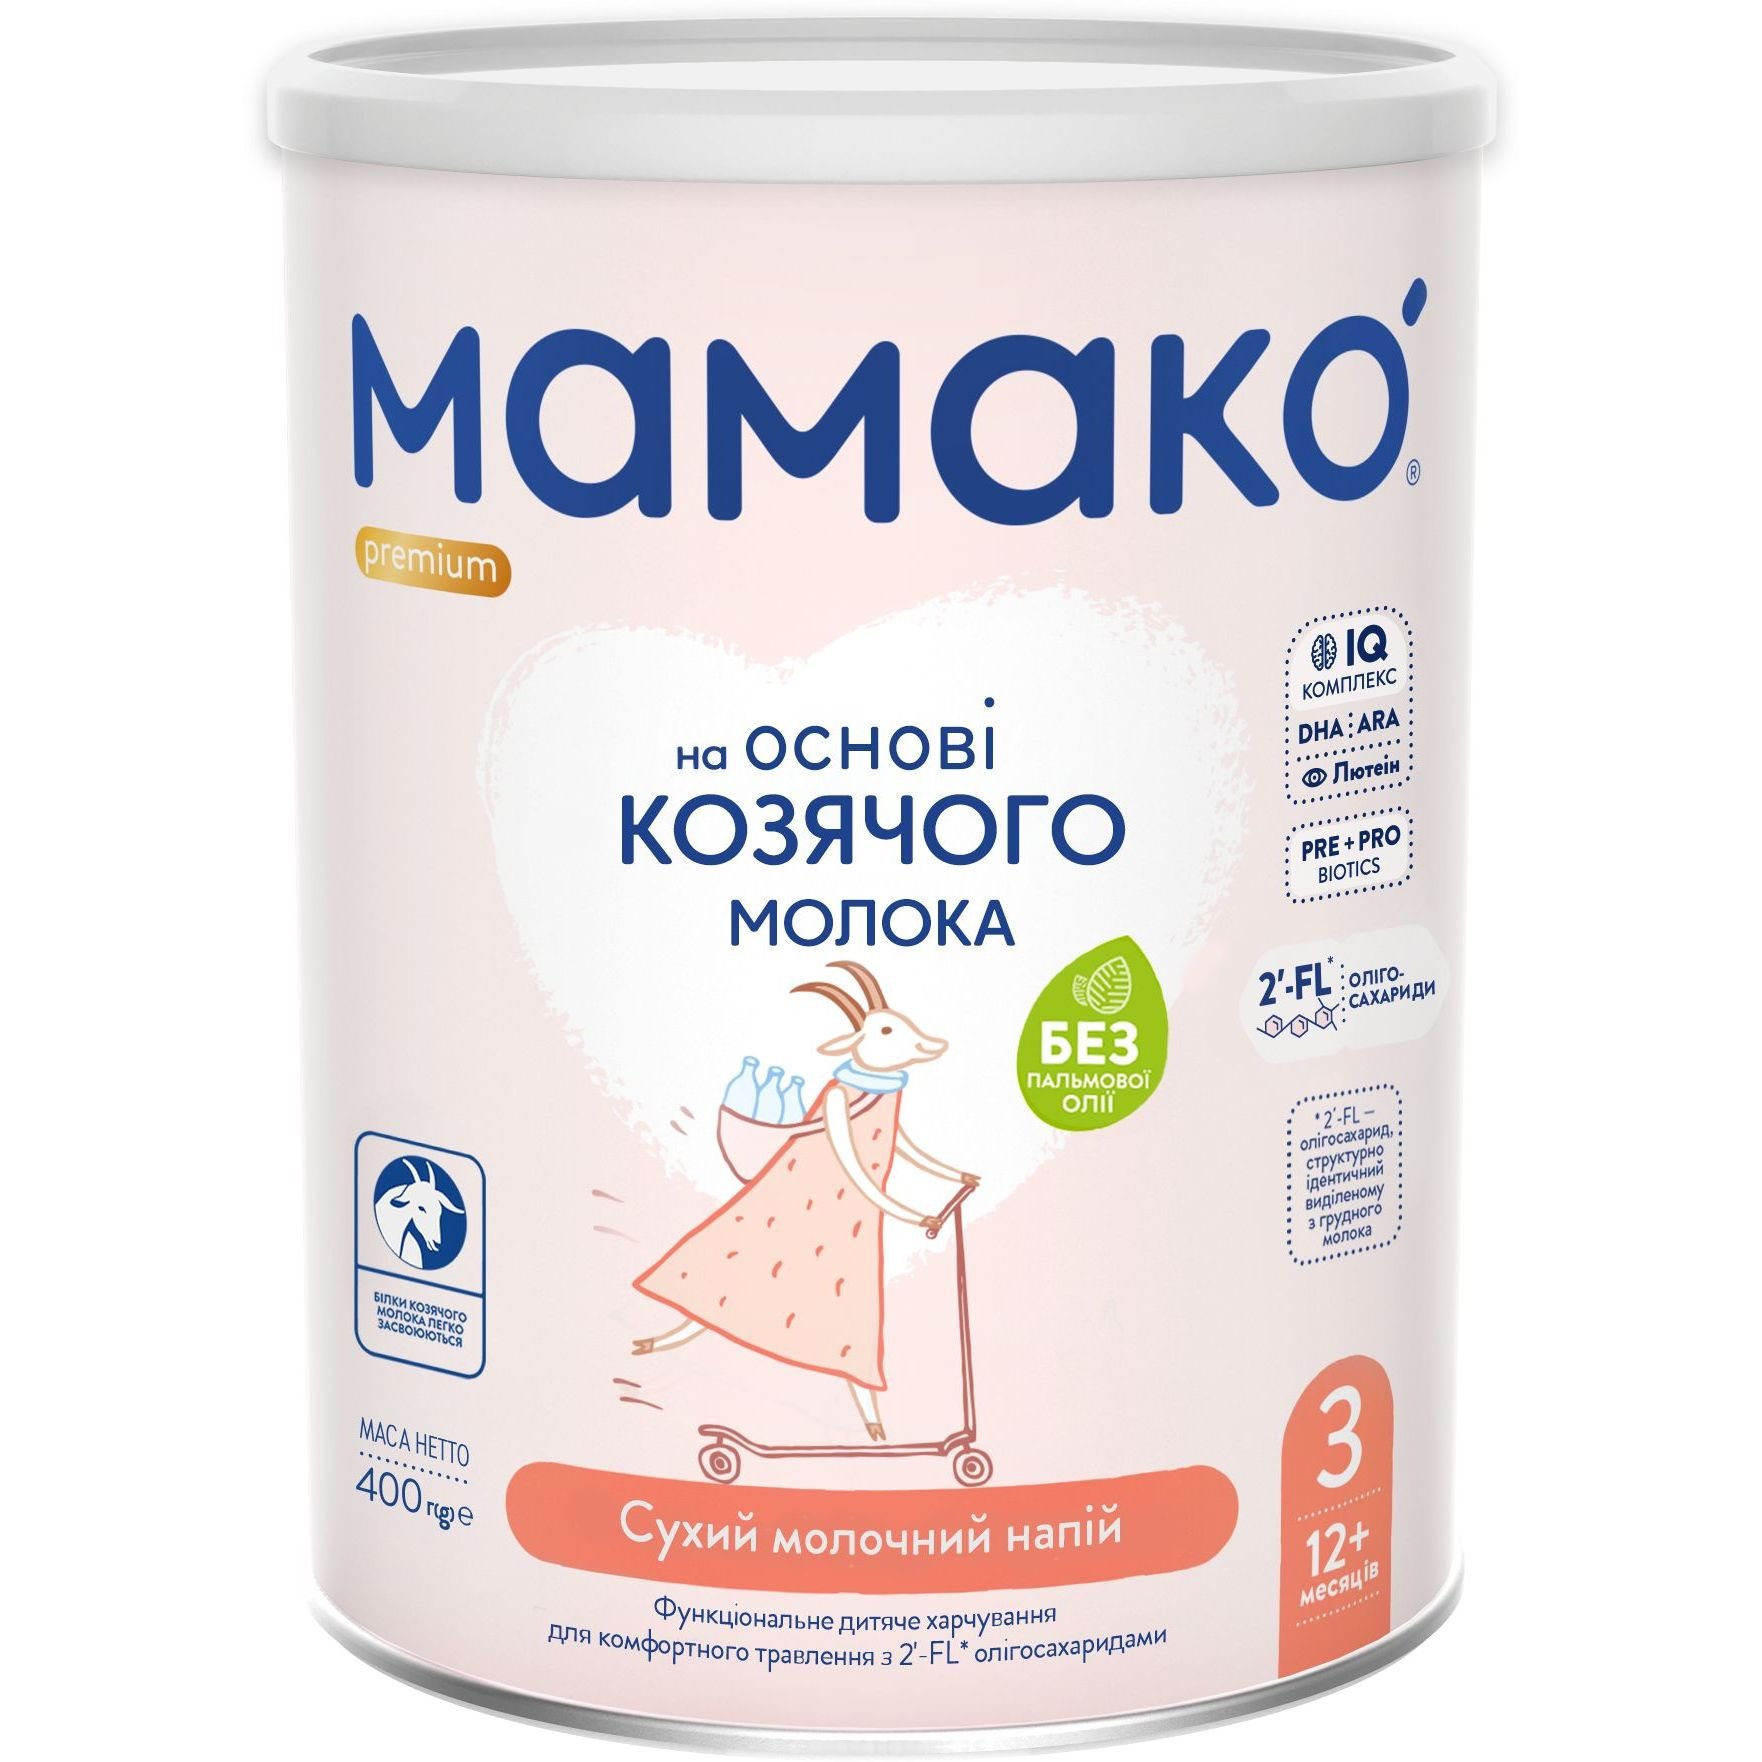 Сухий молочний напій на основі козячого молока МАМАКО Premium 3, 400 г - фото 1